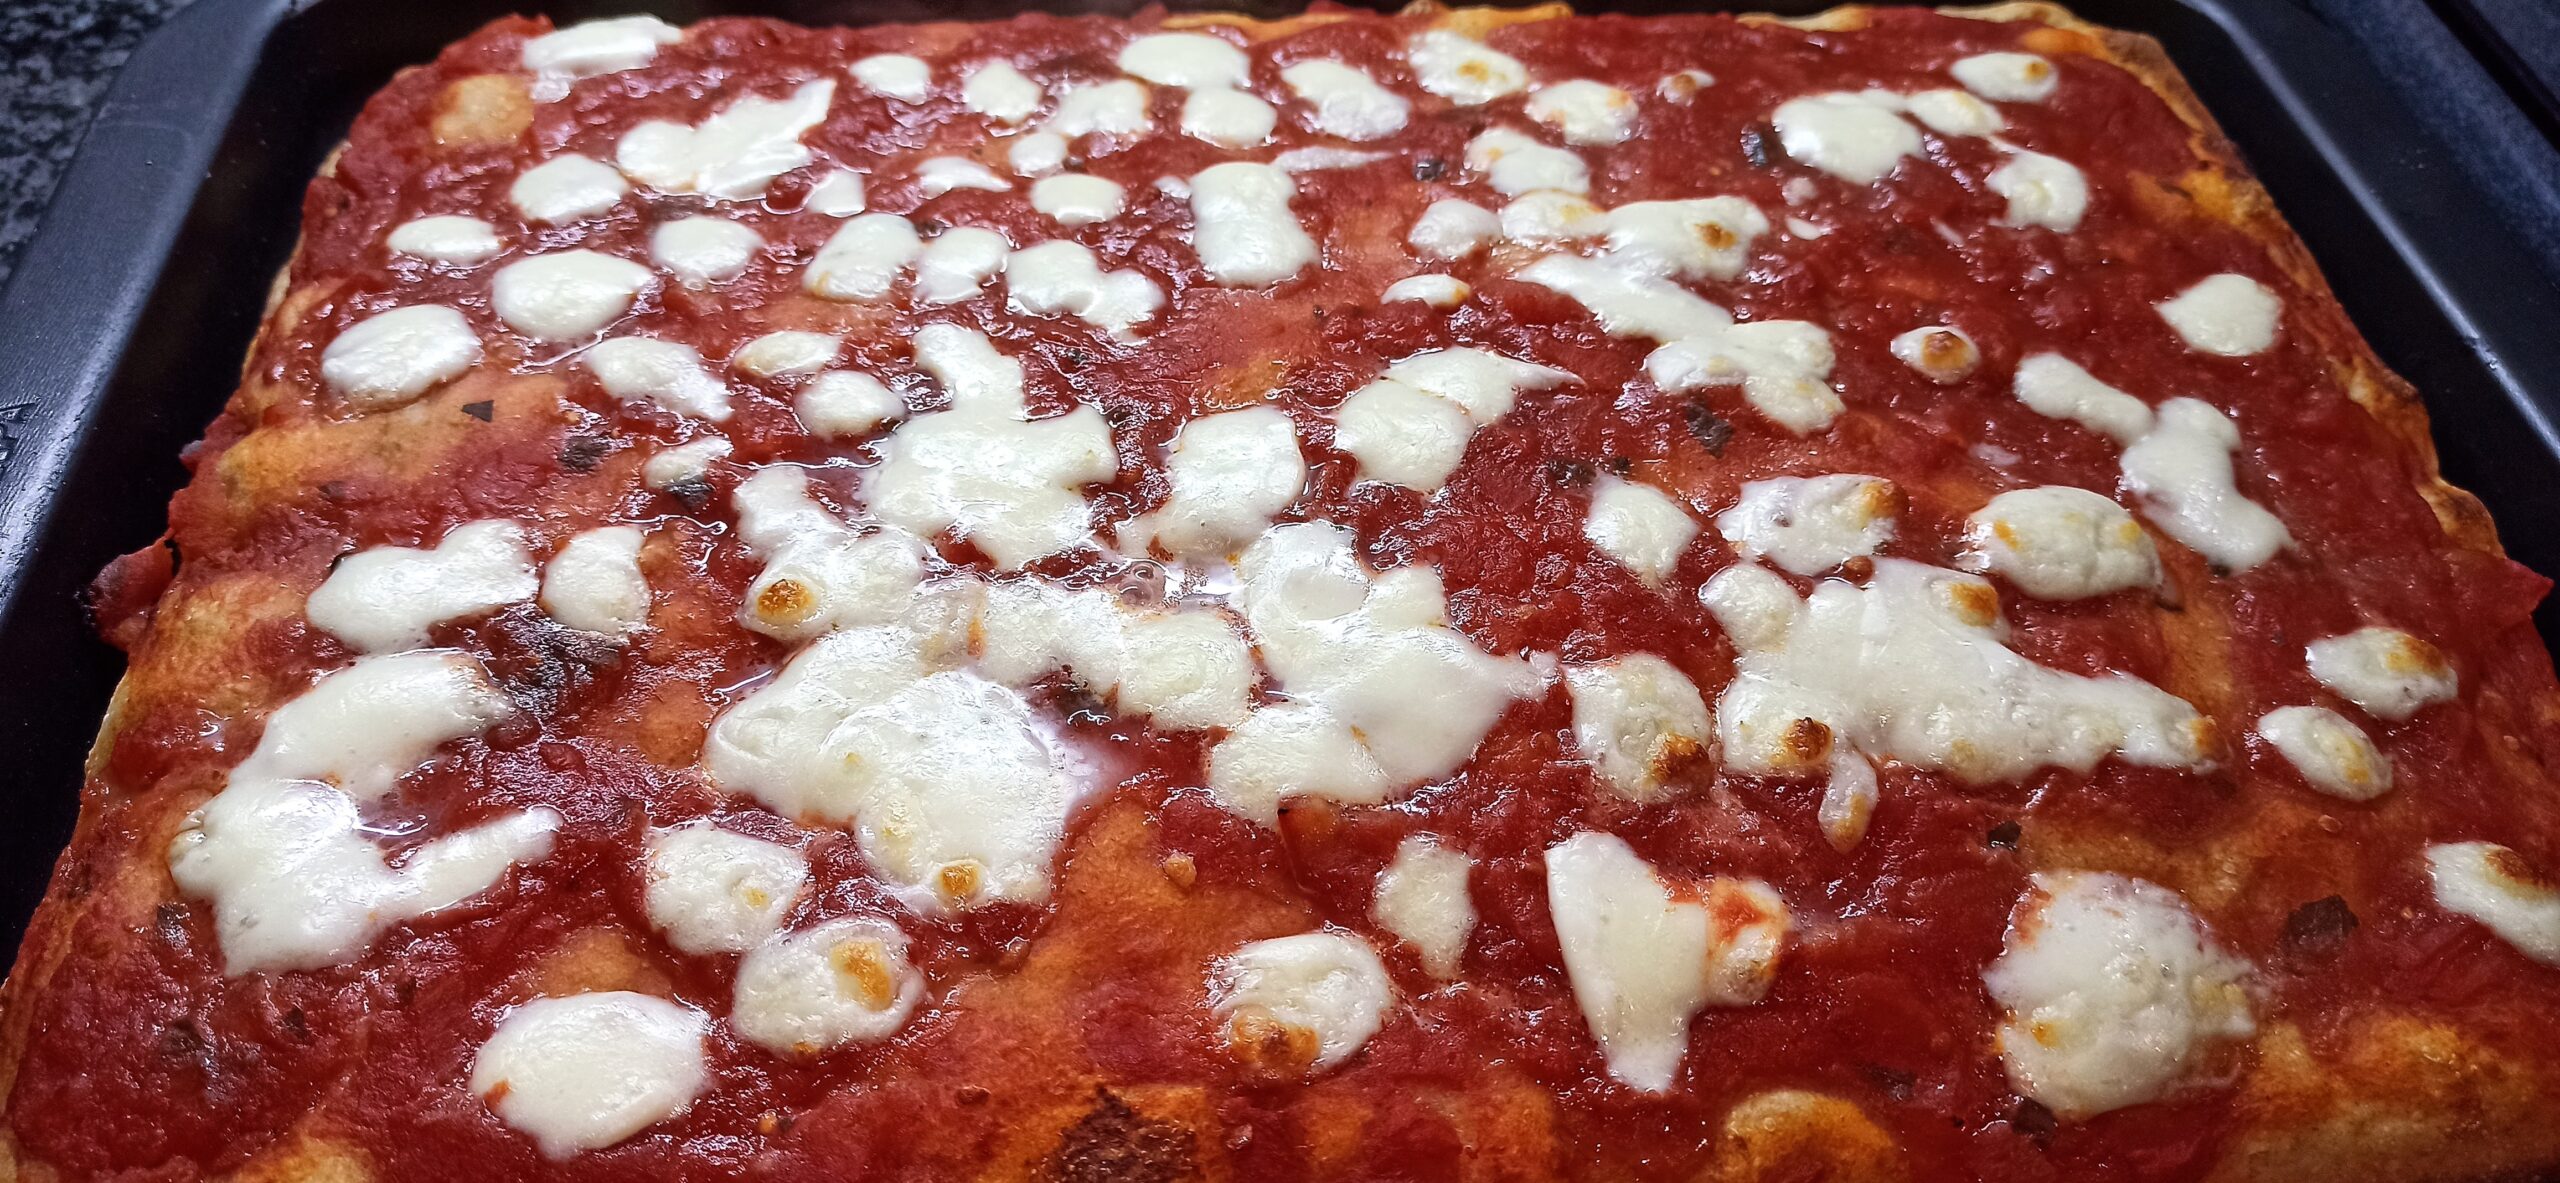 pizza-napoletana-in-teglia-fatta-in-casa,-il-segreto-per-farla-soffice:-“il-trucco-e-come-si-stende-nella-teglia”